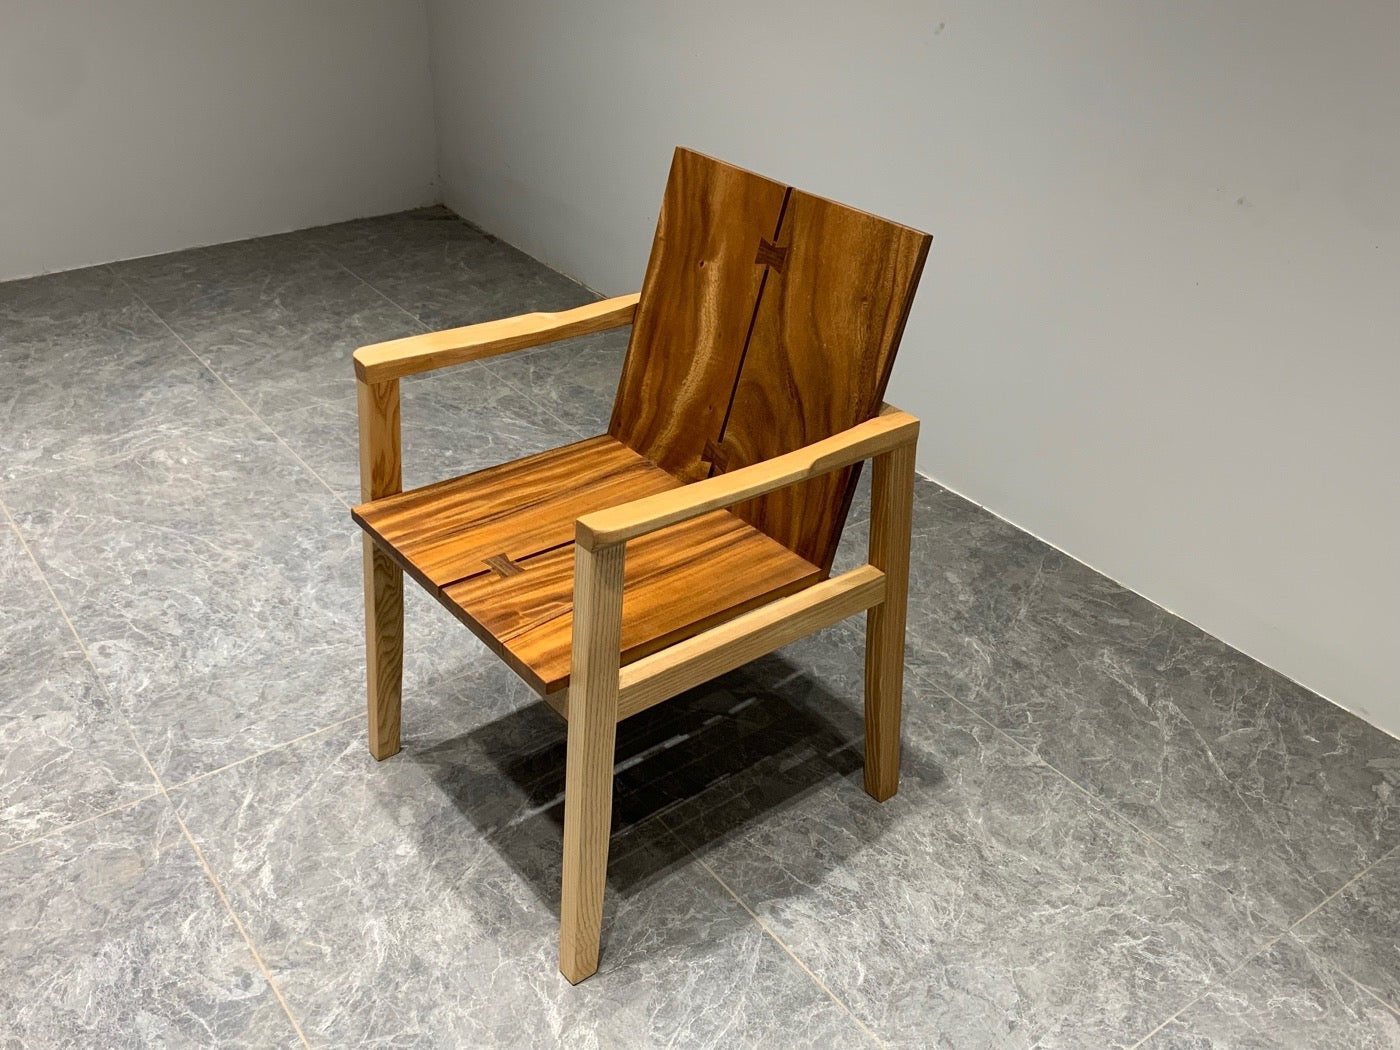 Silla Michigan Adirondack, silla de nogal con respaldo alto, silla trasera, silla de madera